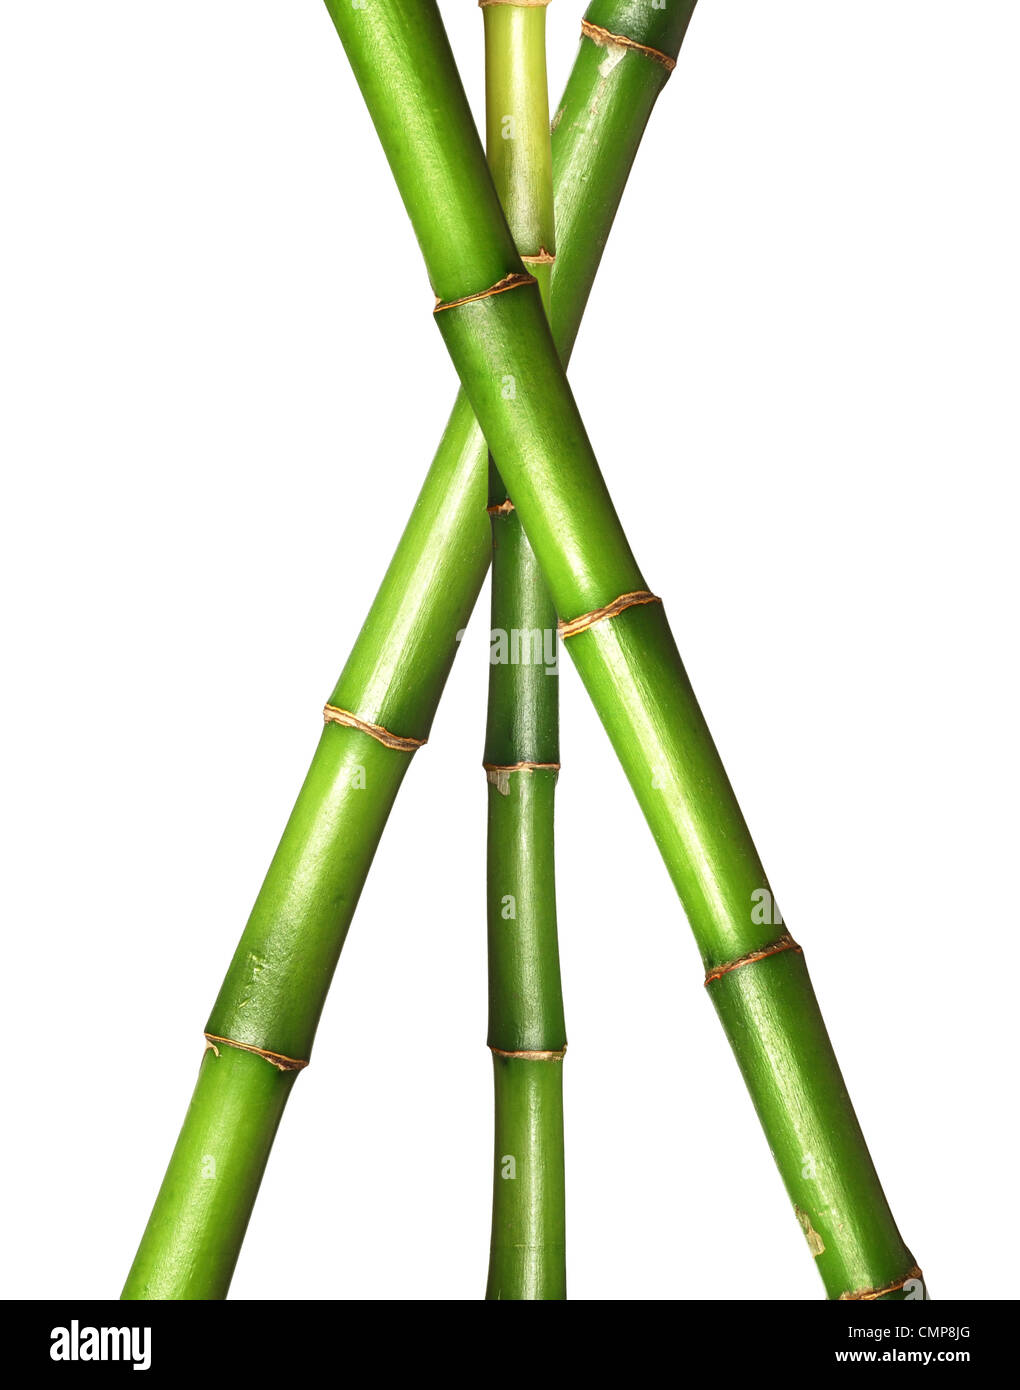 Motif de la tige de bambou de la chance Banque D'Images